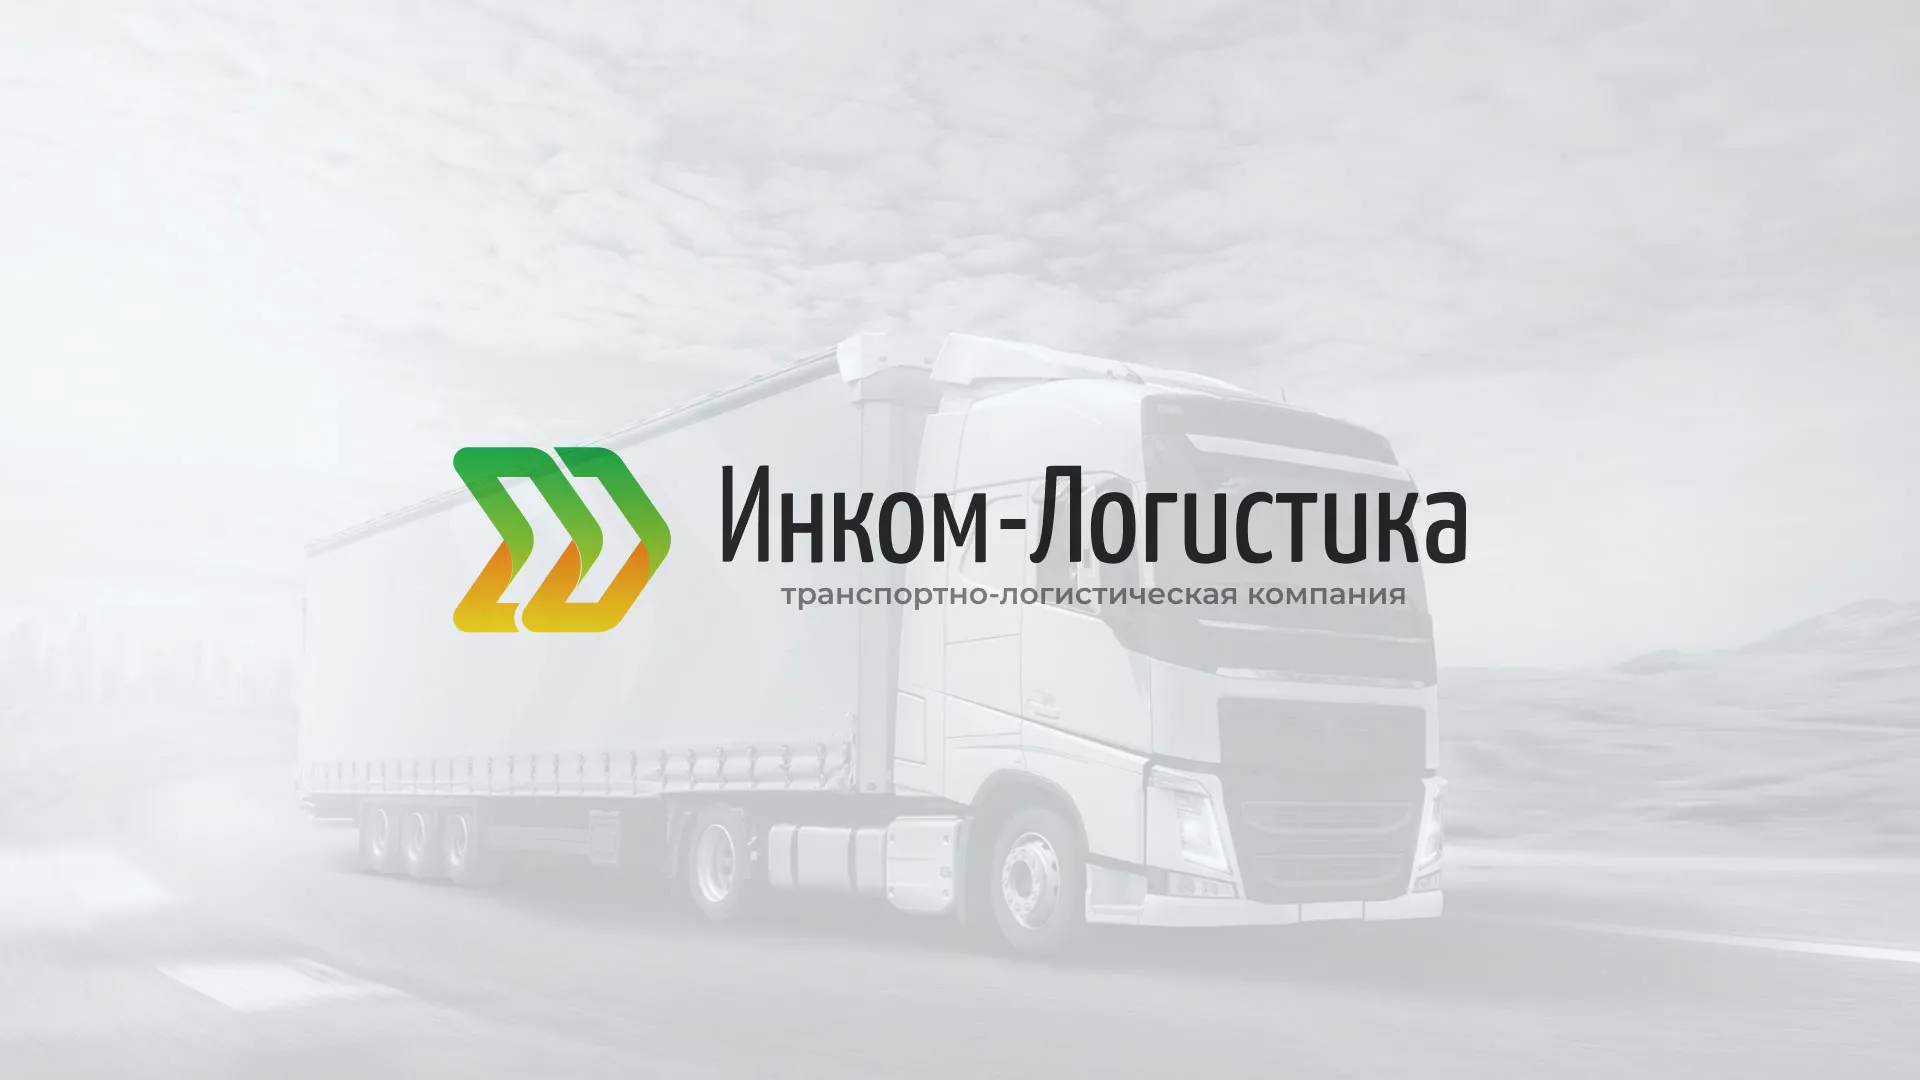 Разработка логотипа и сайта компании «Инком-Логистика» в Воронеже